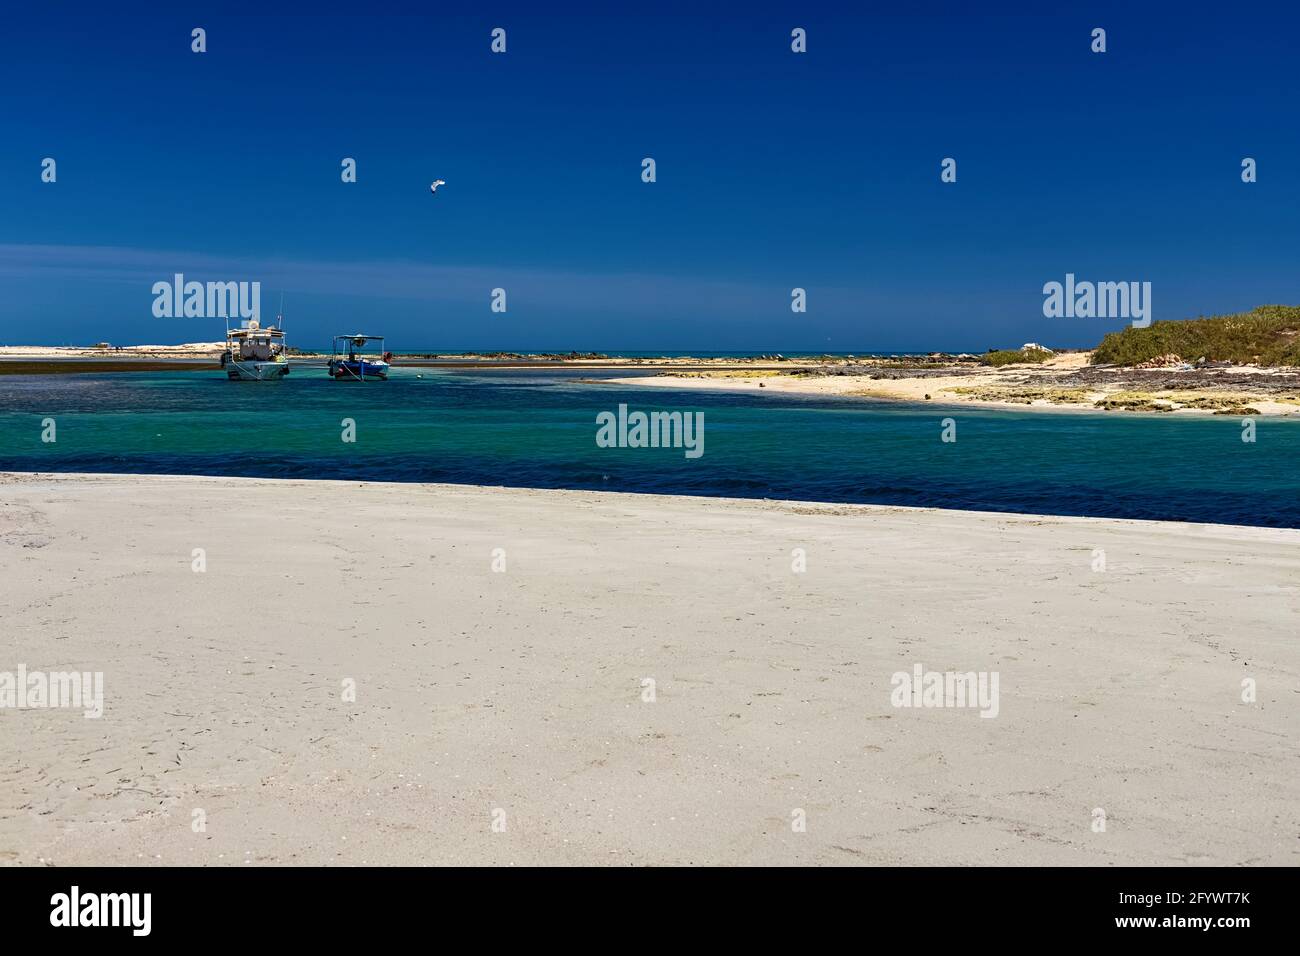 Paysage marin. Belle vue sur les bateaux dans le lagon sur la plage dans la mer Méditerranée sur l'île de Djerba. Tunisie Banque D'Images